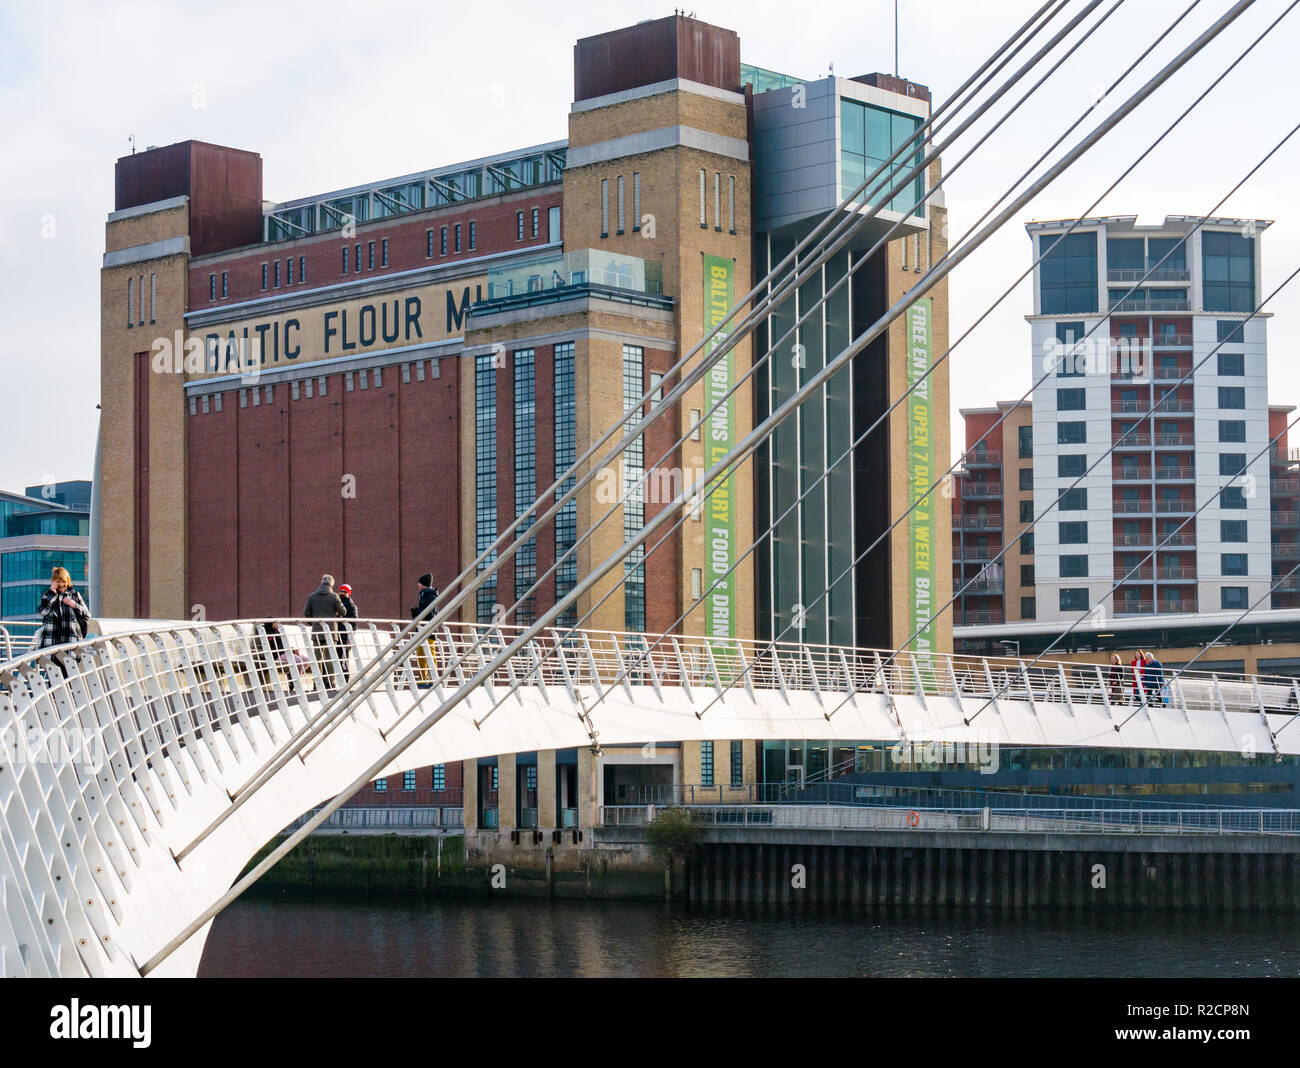 Molino de harina del Báltico ahora peatonal y el centro de exposiciones de arte Puente del milenio de Gateshead, Newcastle Upon Tyne, Inglaterra, Reino Unido. Foto de stock